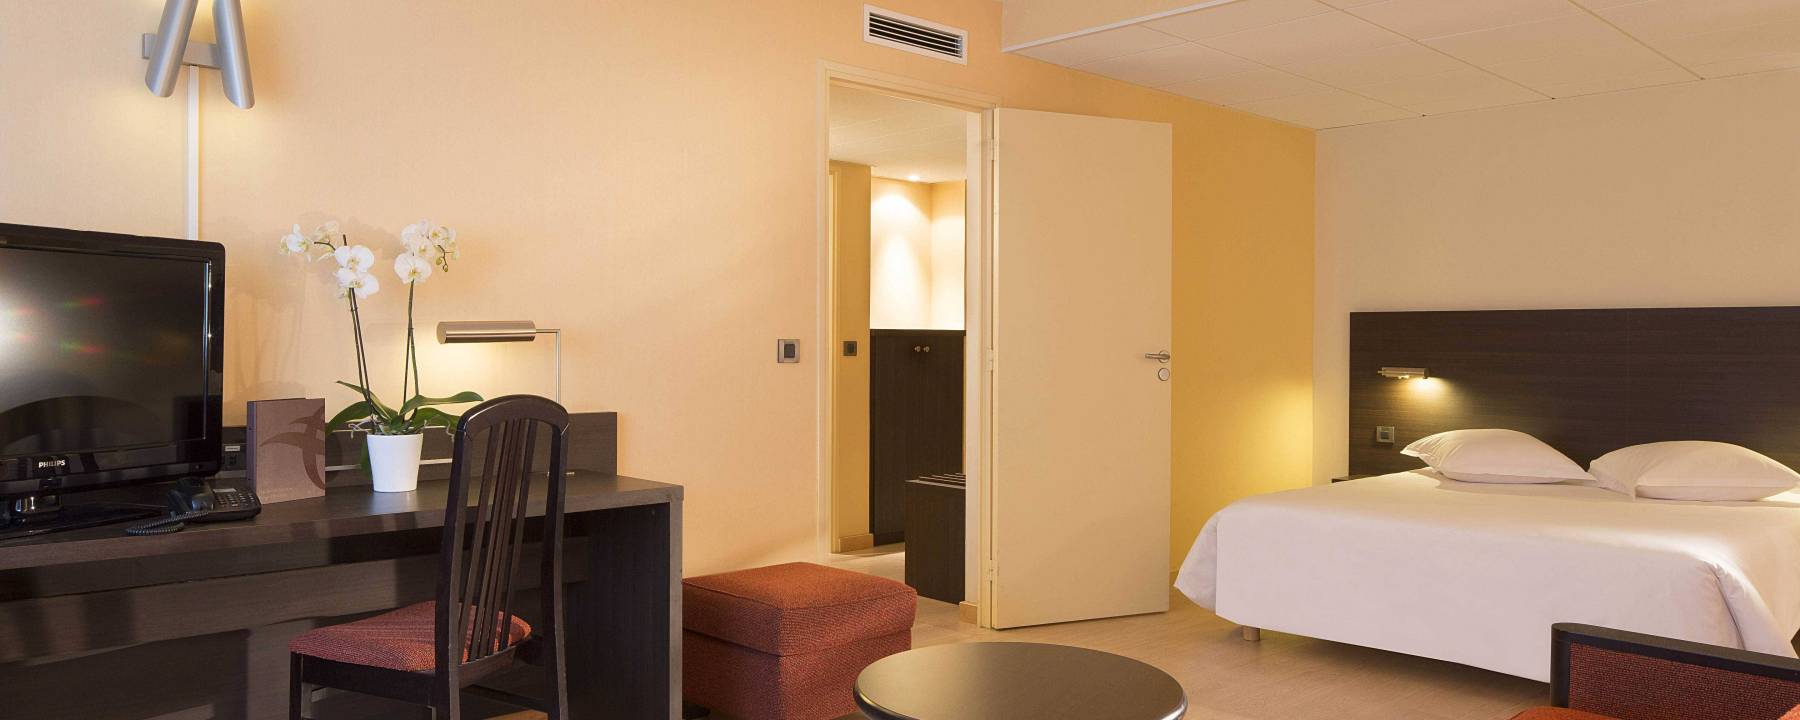 Recrutement: Femme de chambre / Valet de chambre F/H chez Oceania Hotels à Gouesnou